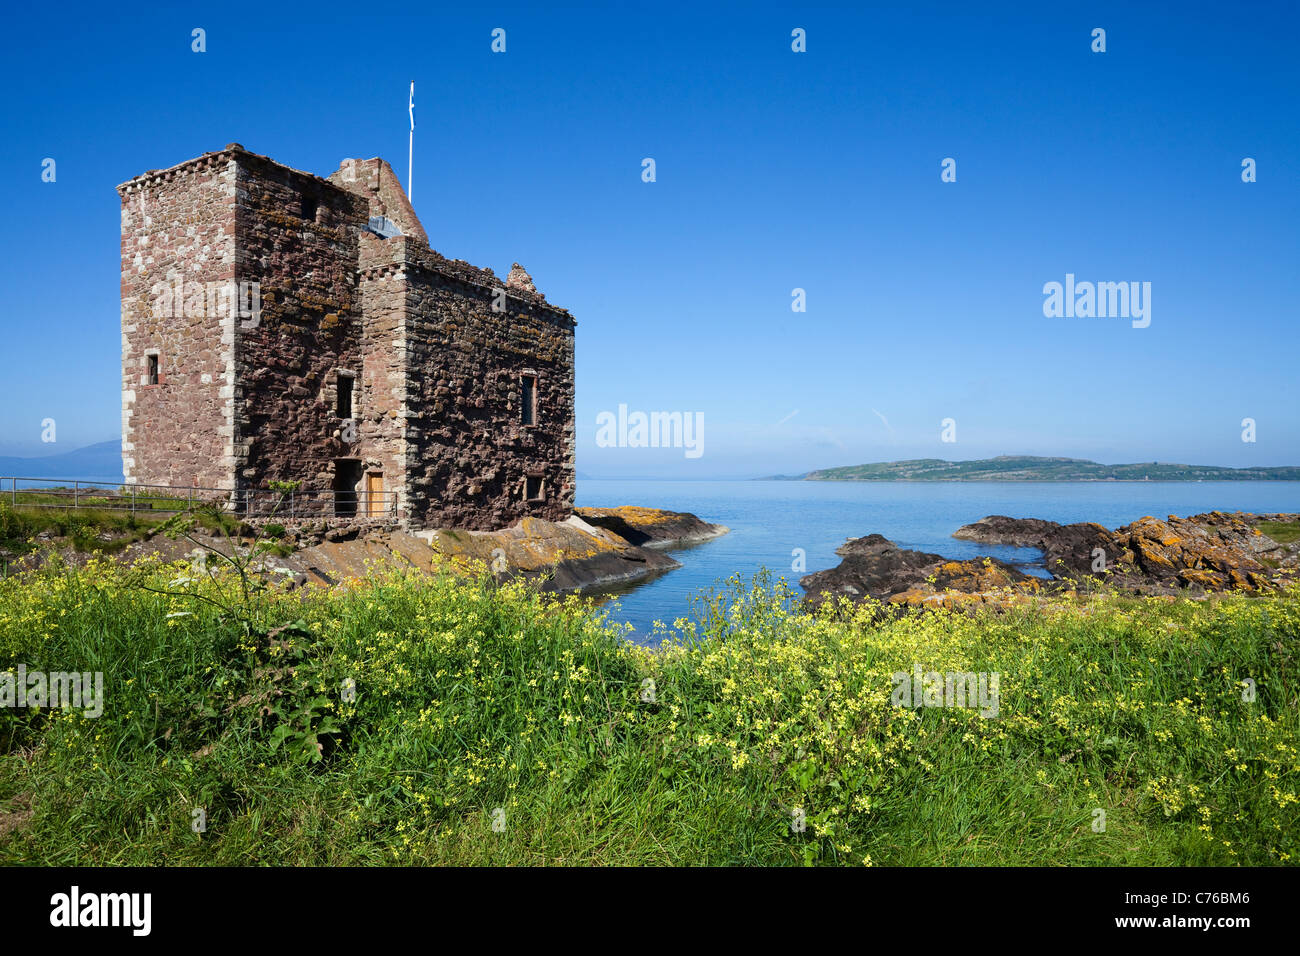 Il castello di Portencross, con una veduta sul Firth of Clyde per l'isola di Little Cumbrae, Ayrshire in Scozia, Regno Unito, Gran Bretagna Foto Stock